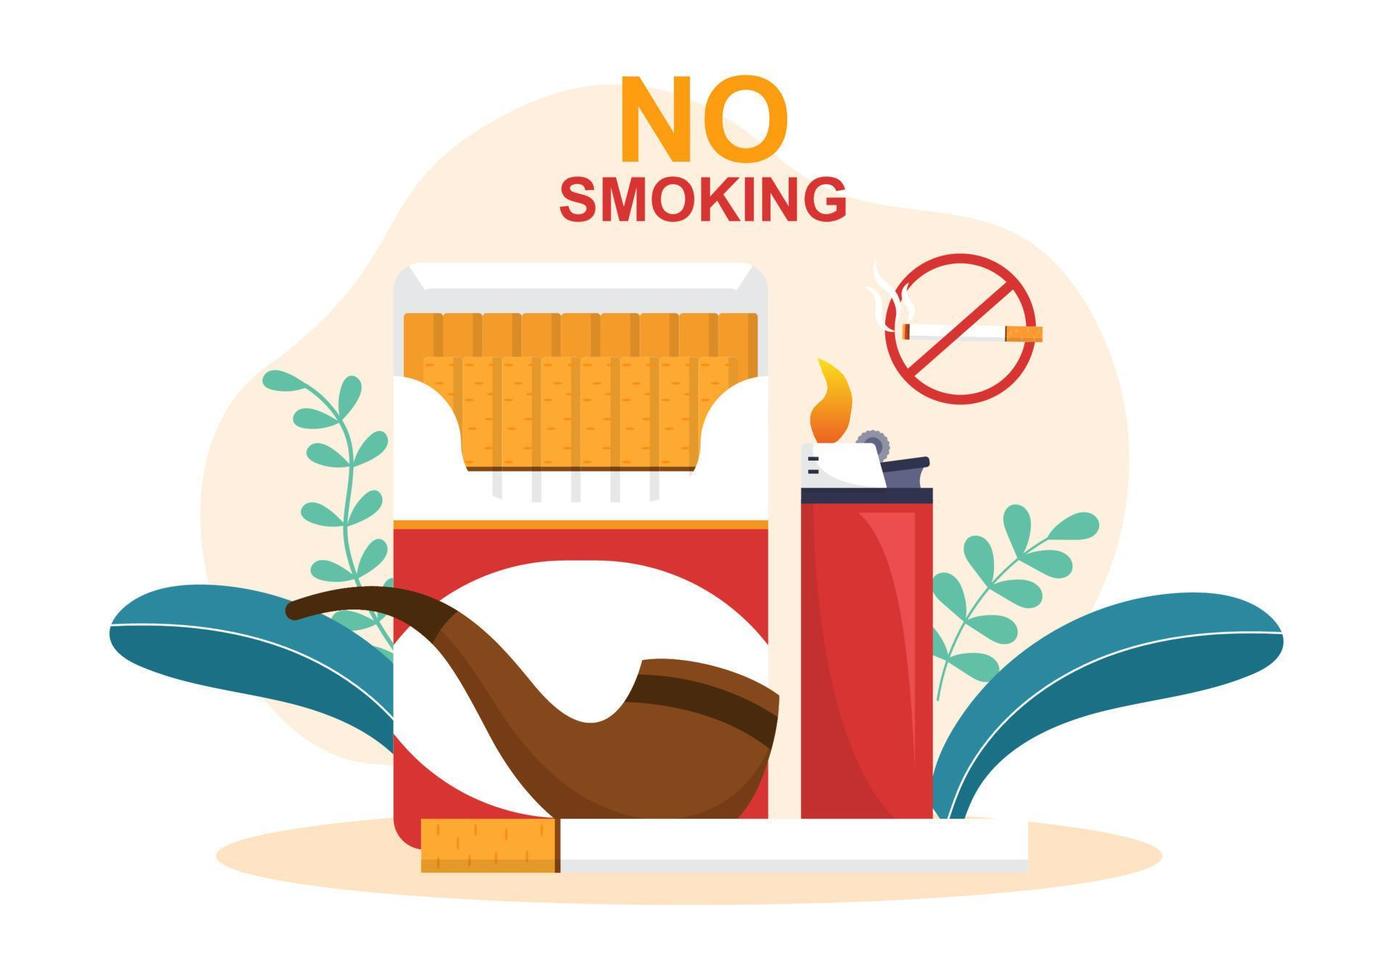 arrêter de fumer ou pas de cigarettes pour lutter contre les mauvaises habitudes de fumeur, médical et comme alerte précoce en illustration de dessin animé plat vecteur